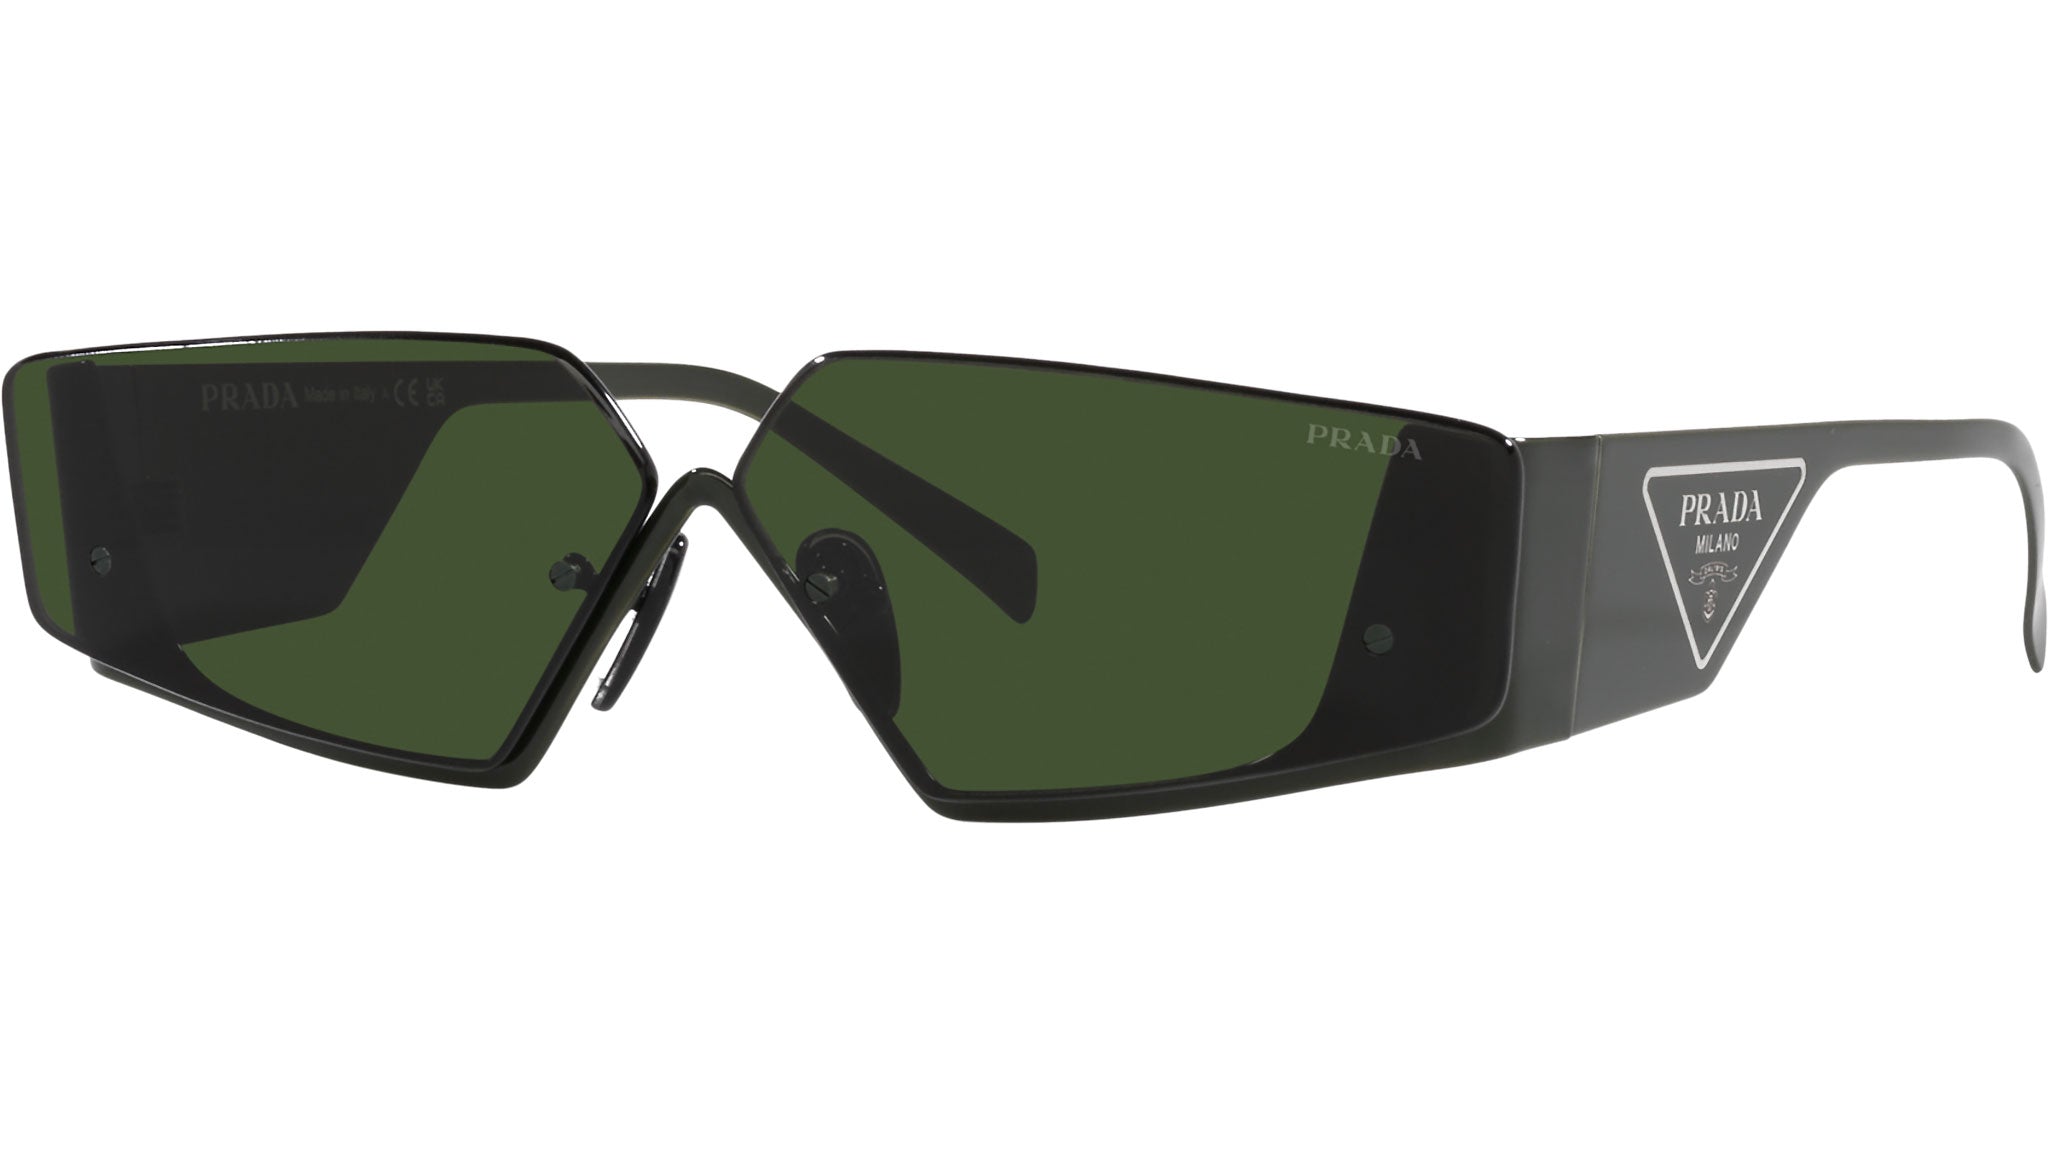 Runway Rectangular Sunglasses in Green - Prada